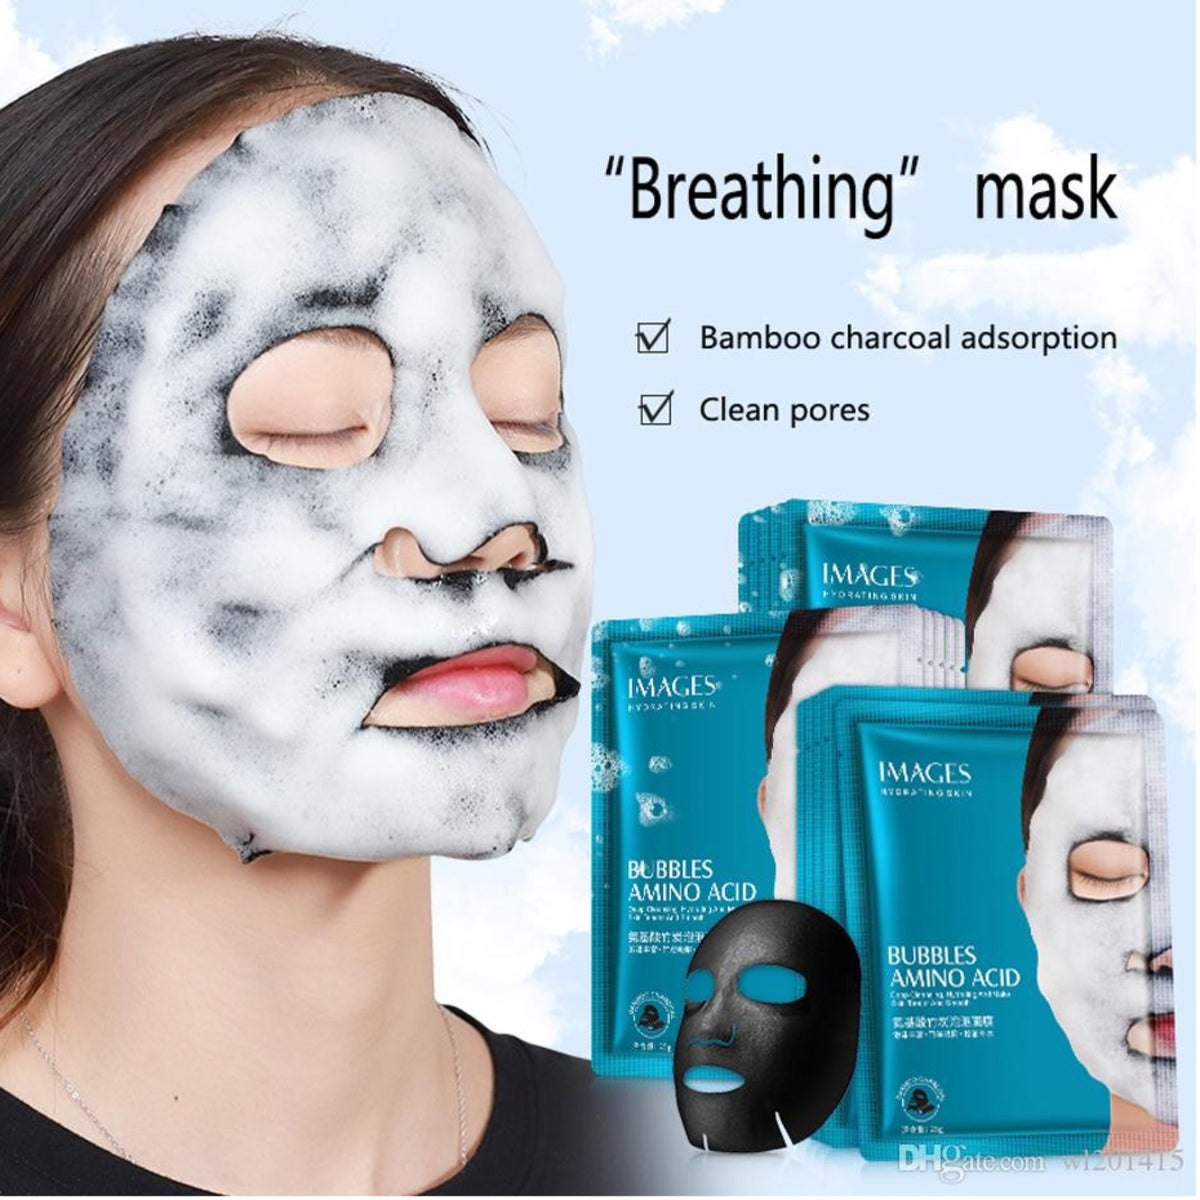 Bubbler Amino Acid Facial Mask